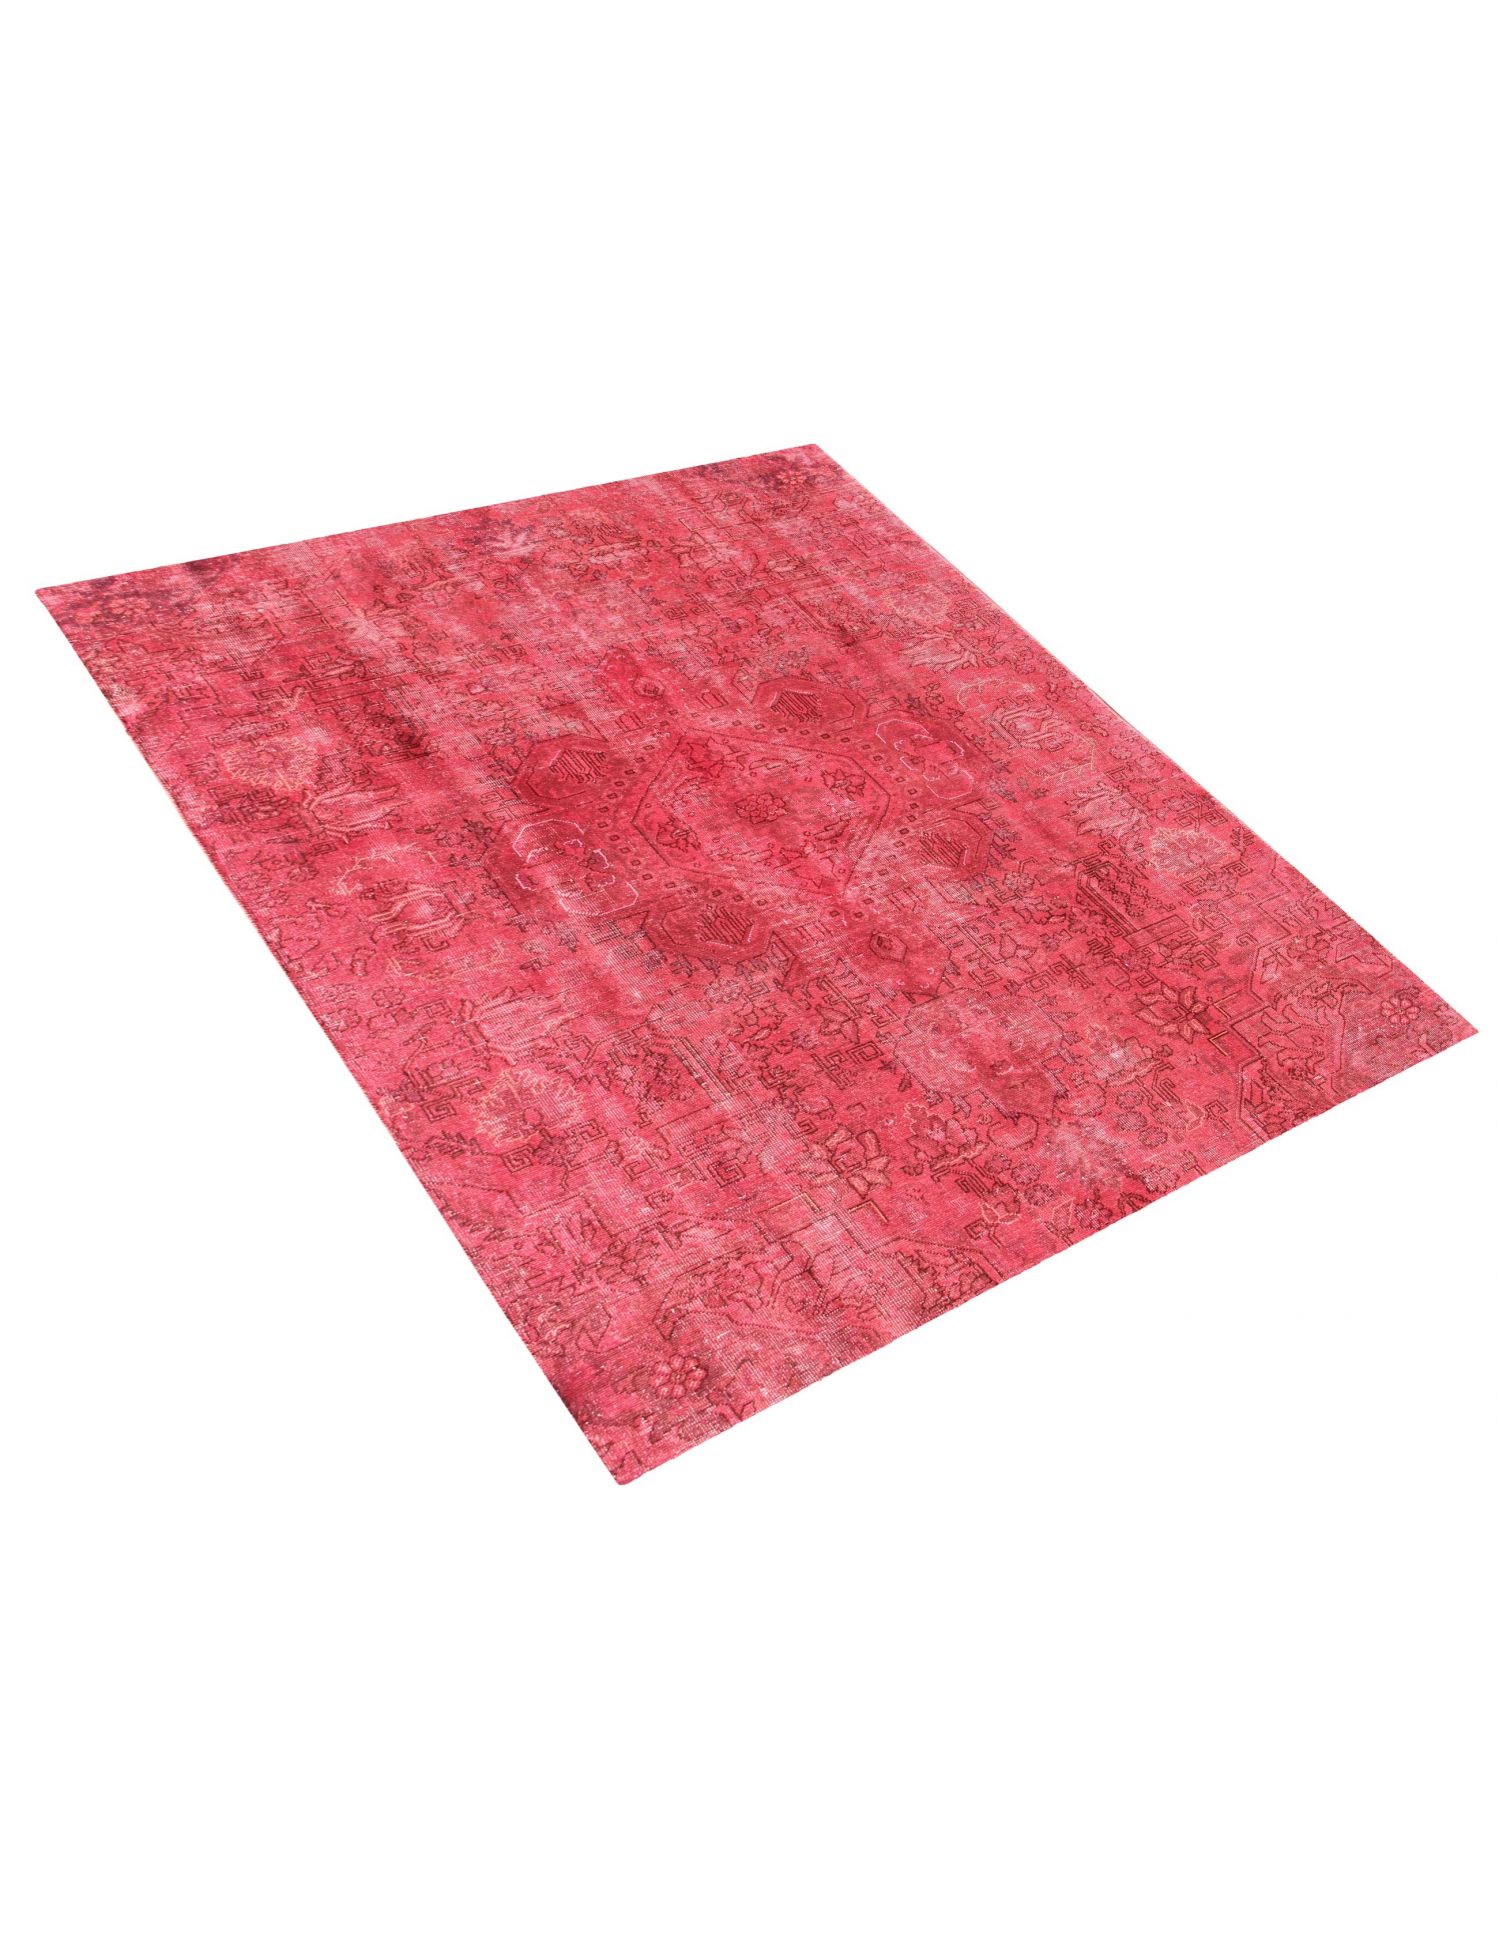 Persischer Vintage Teppich  rot <br/>260 x 200 cm